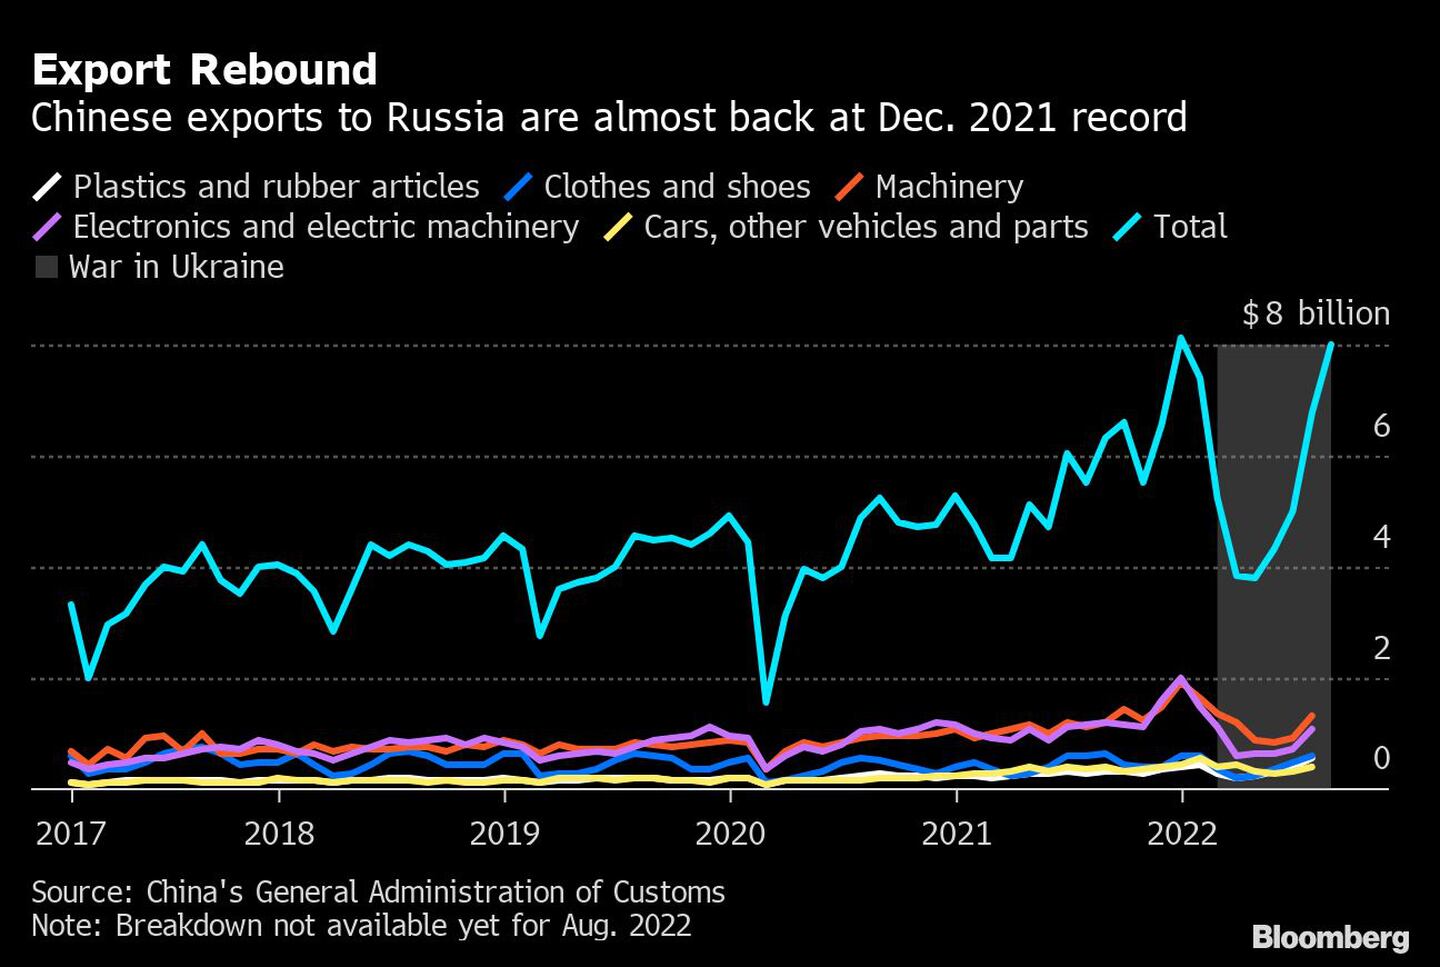 Las exportaciones chinas a Rusia están prácticamente en los niveles récord de 2021dfd